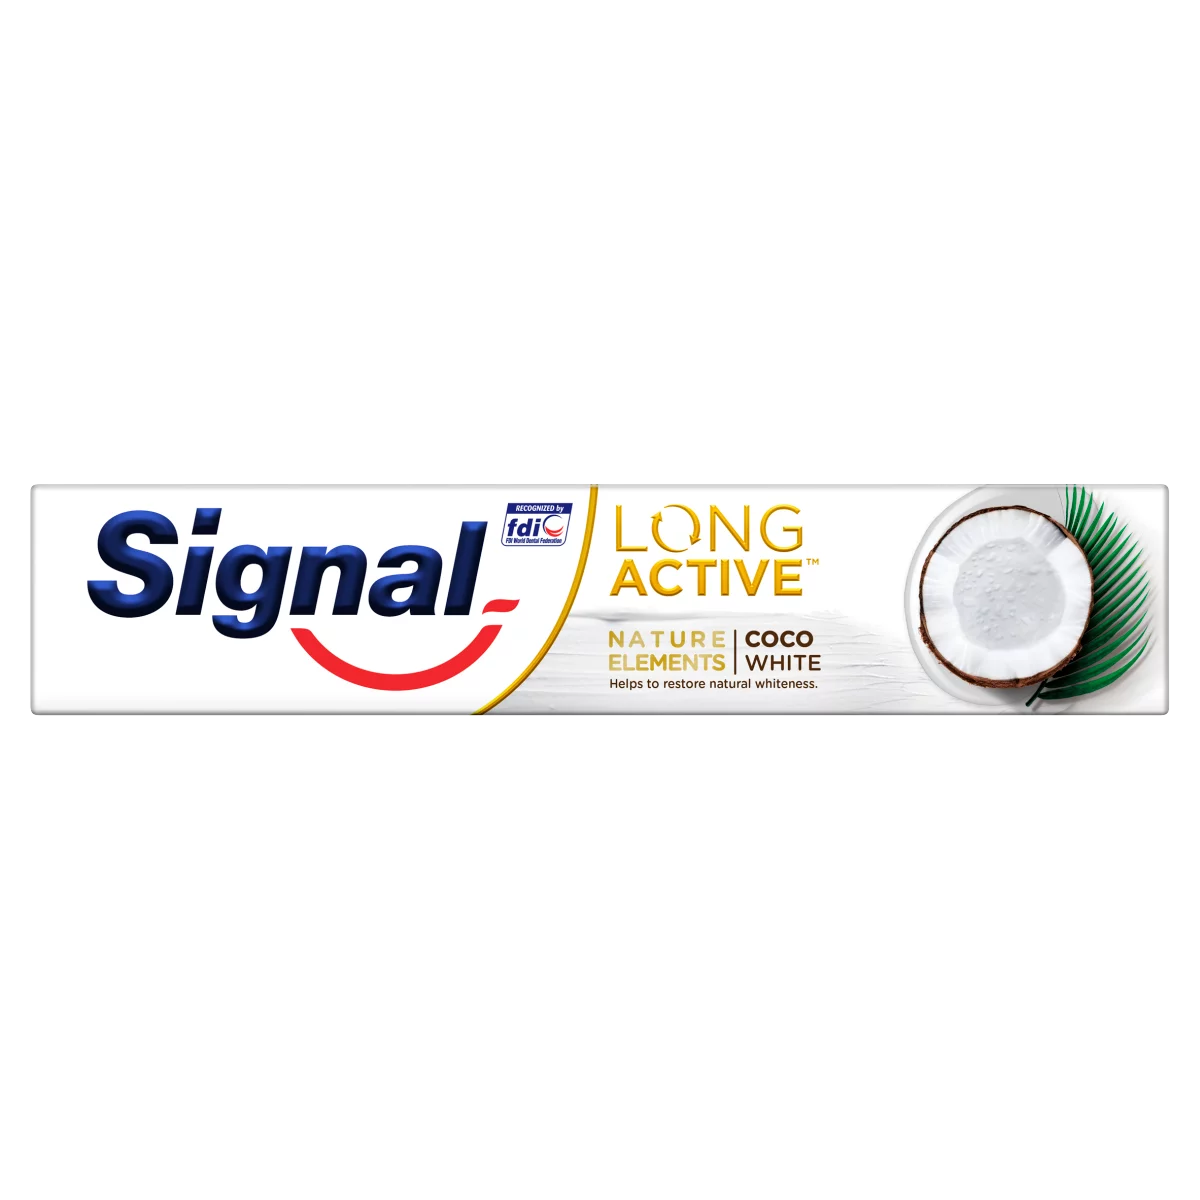 Signal Long Active Nature Elements Coco White fogkrém 75 ml